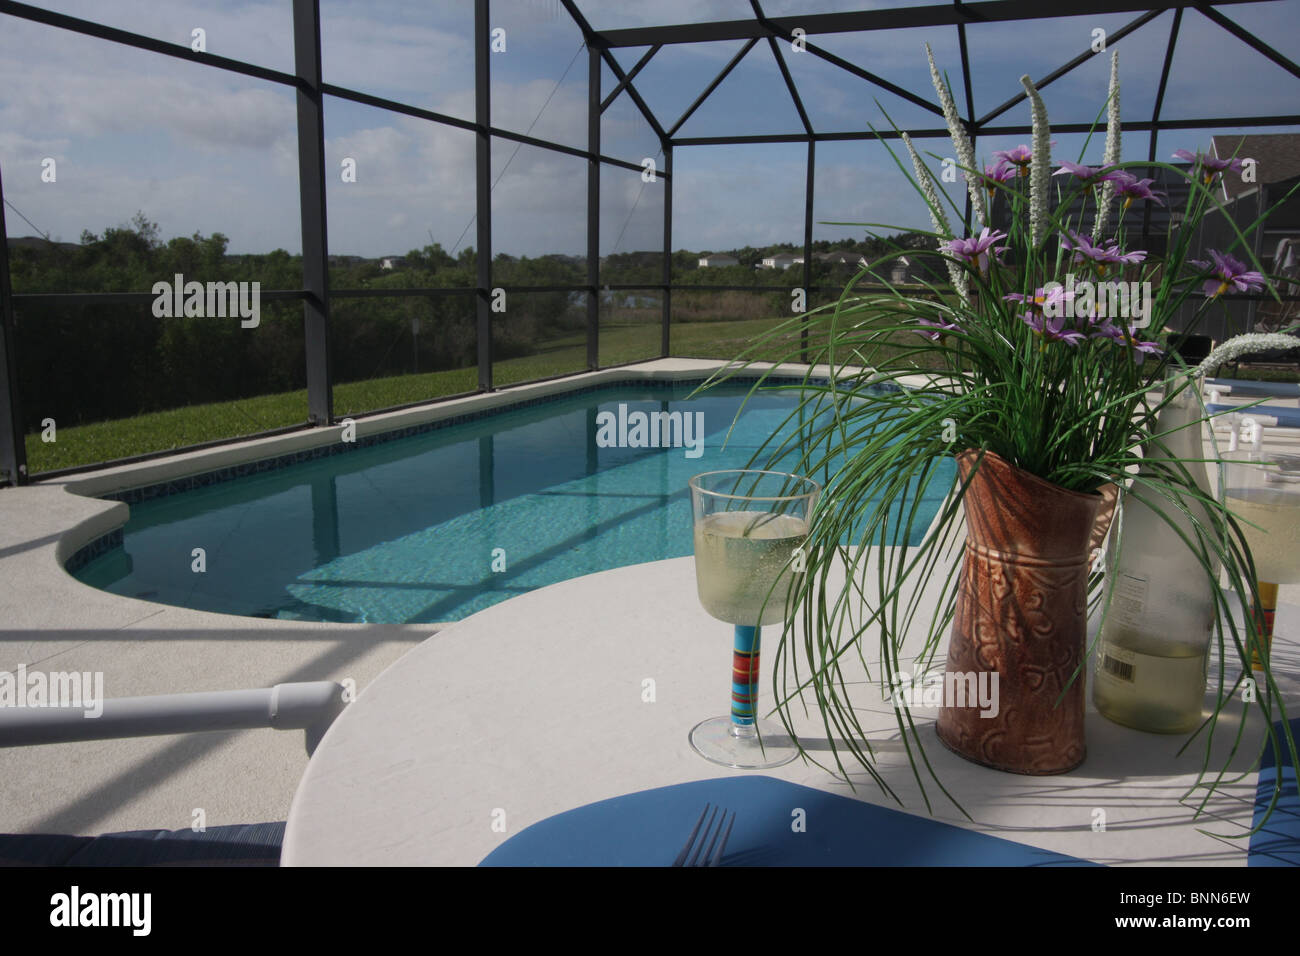 Privater Swimming Pool und Terrassenbereich mit Insekt Netz Abdeckung, aufgenommen am Urlaub in Florida. Stockfoto